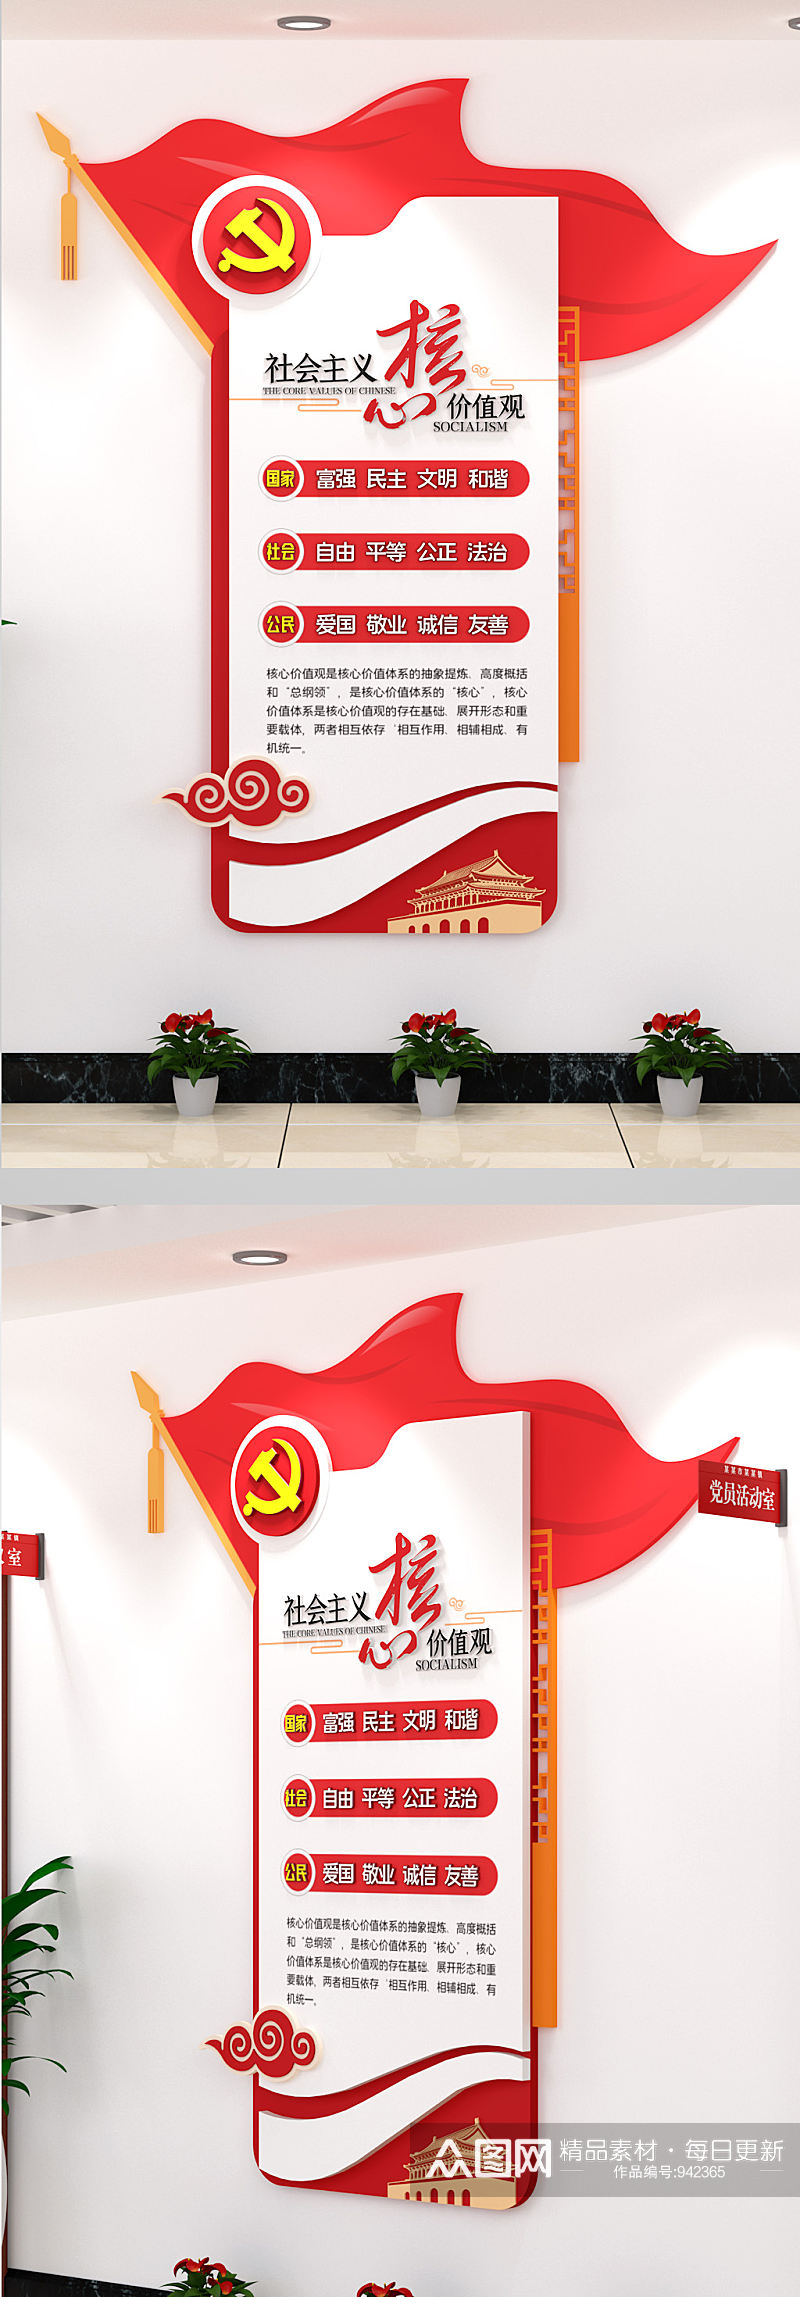 社会主义核心价值观AI展馆党建文化墙素材